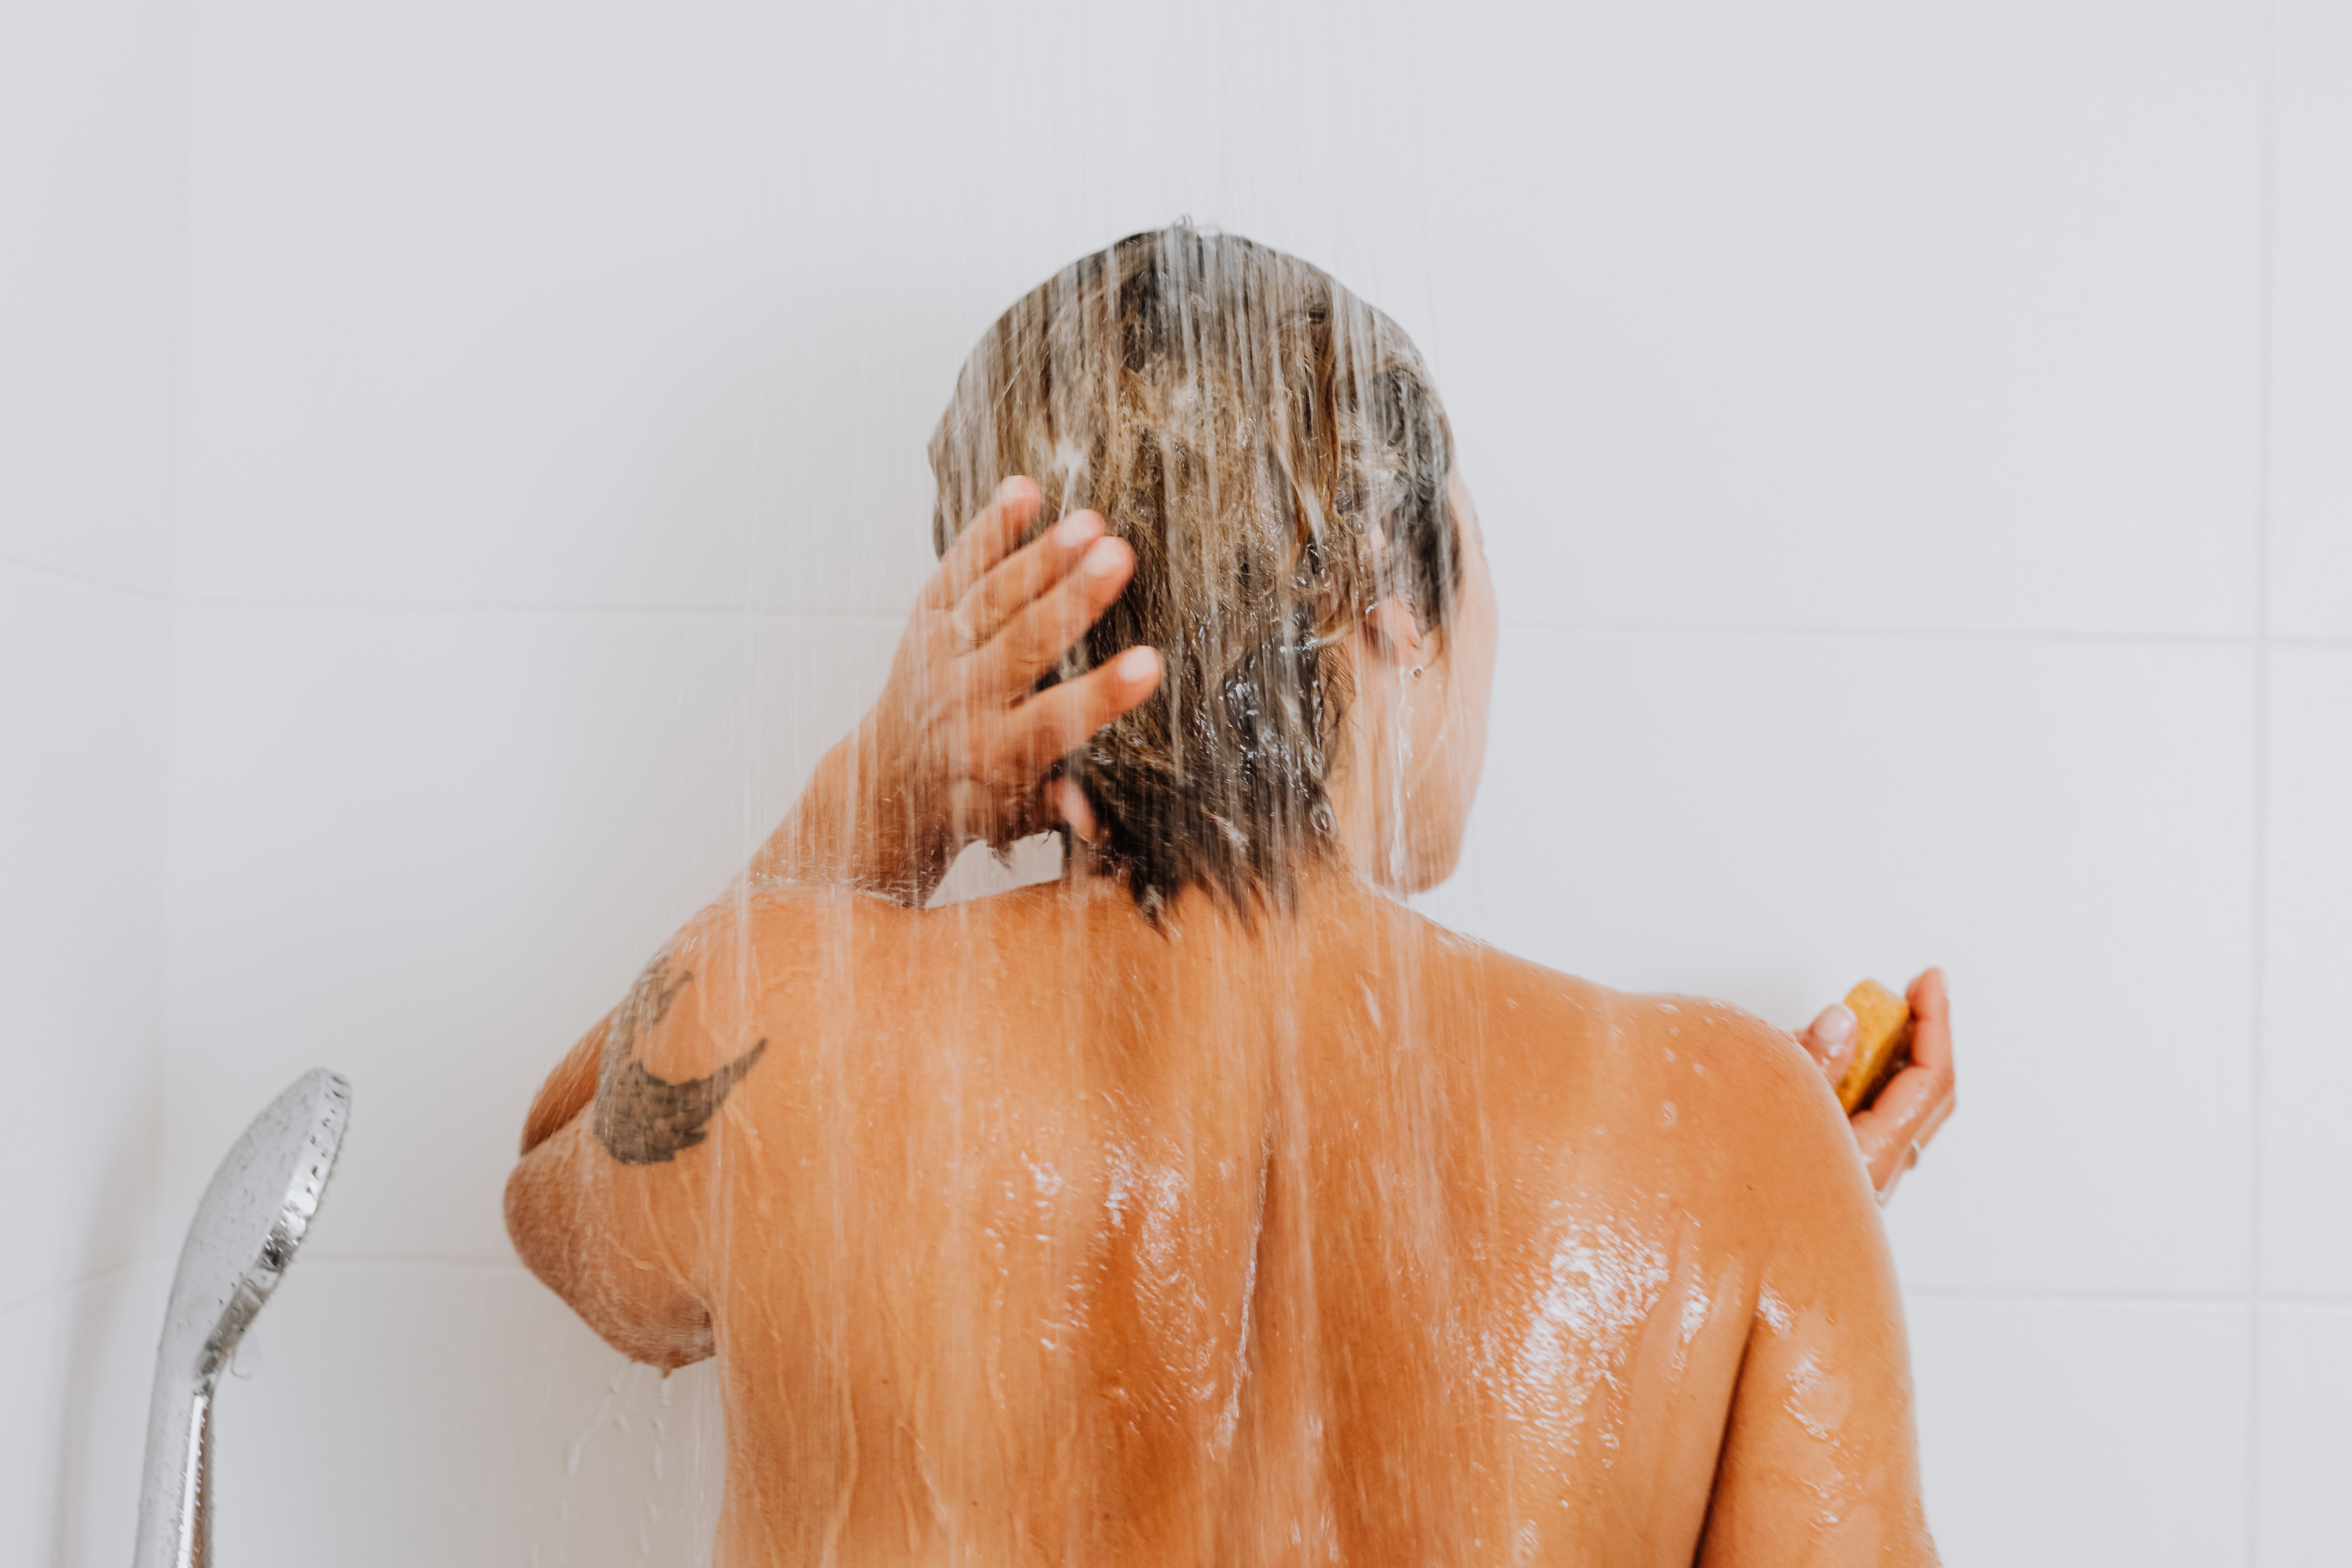 Persona de espalda a la cámara dandose una ducha